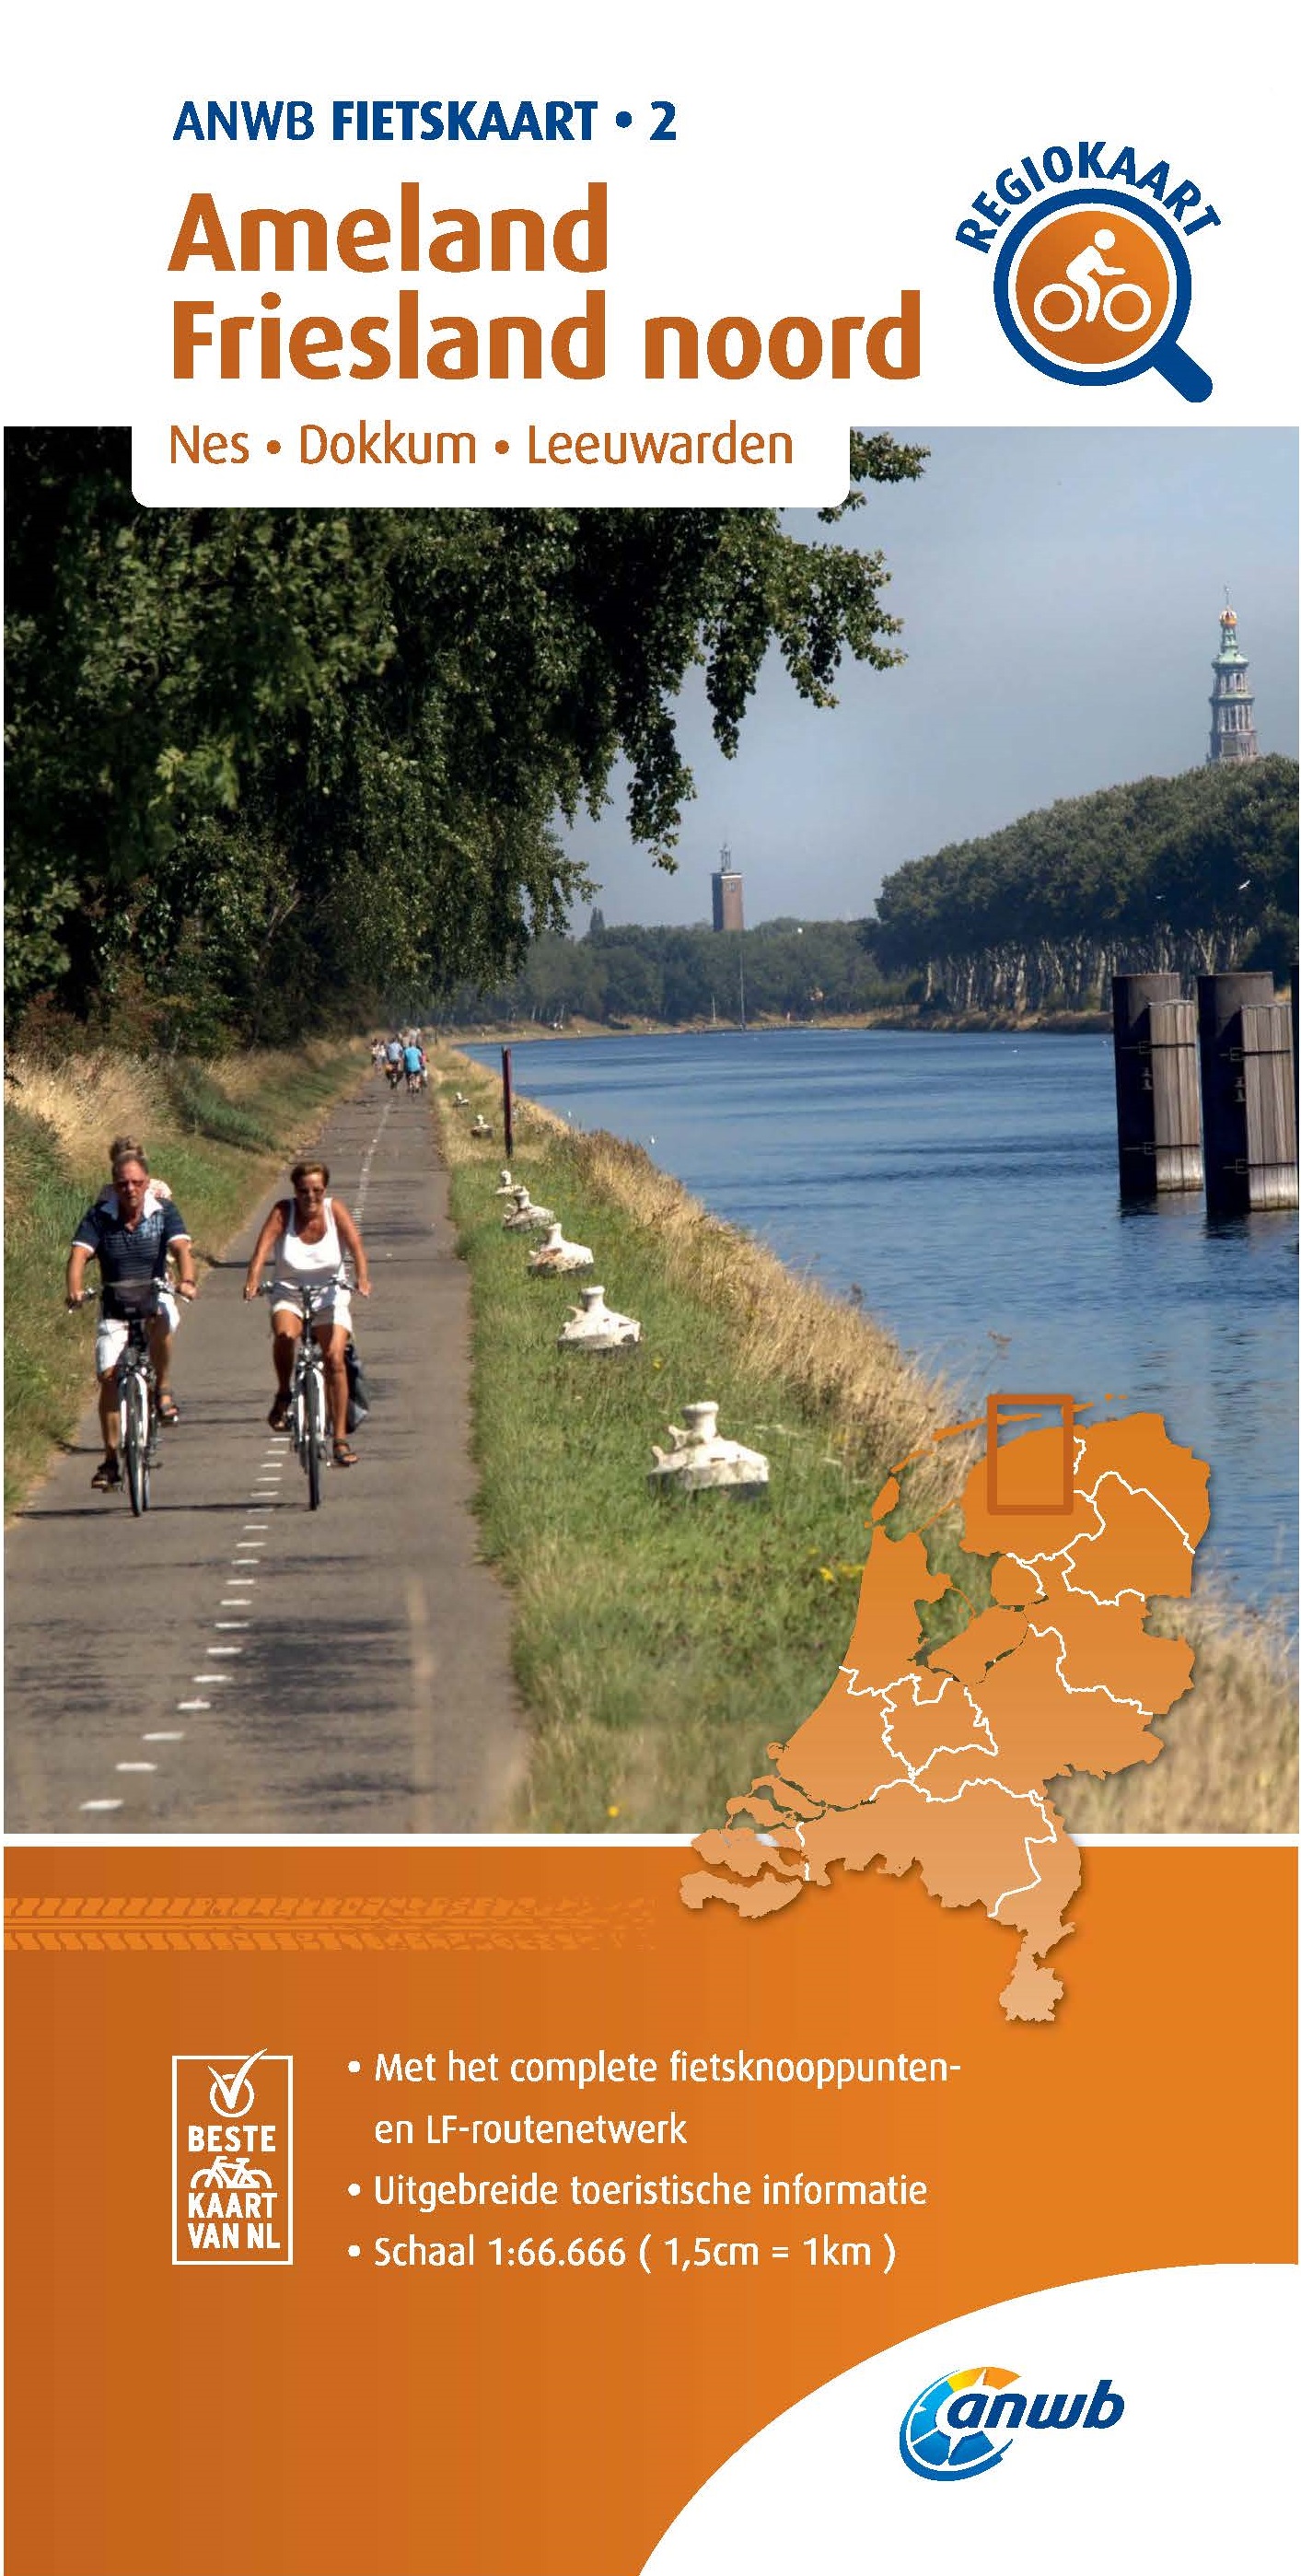 Online bestellen: Fietskaart 02 Regio Fietskaart Ameland - Friesland noord | ANWB Media